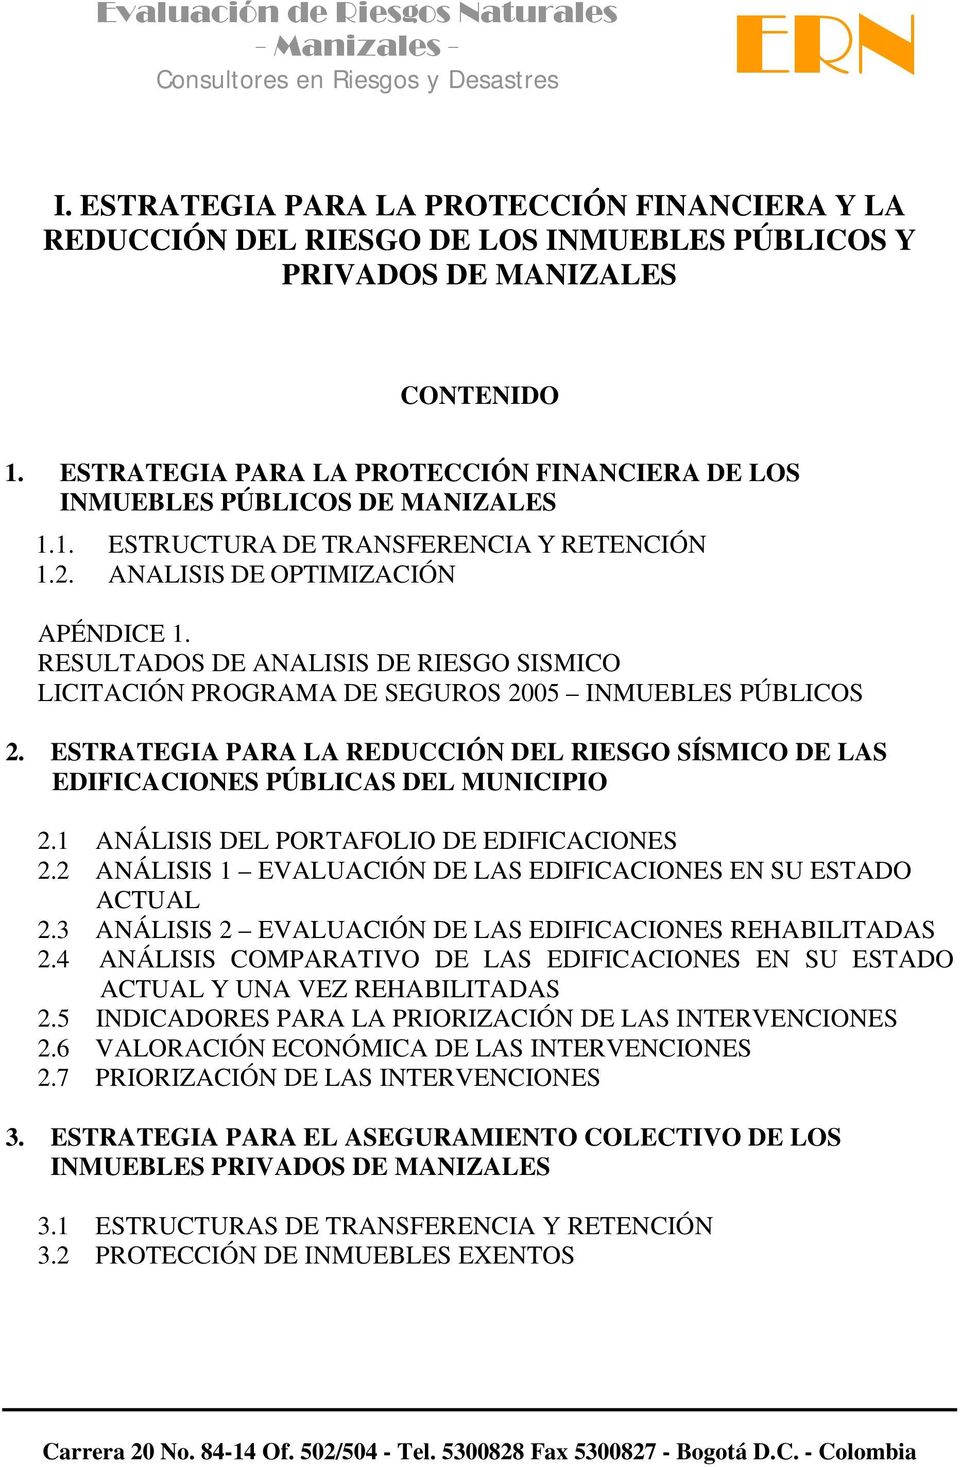 RESULTADOS DE ANALISIS DE RIESGO SISMICO LICITACIÓN PROGRAMA DE SEGUROS 2005 INMUEBLES PÚBLICOS 2. ESTRATEGIA PARA LA REDUCCIÓN DEL RIESGO SÍSMICO DE LAS EDIFICACIONES PÚBLICAS DEL MUNICIPIO 2.